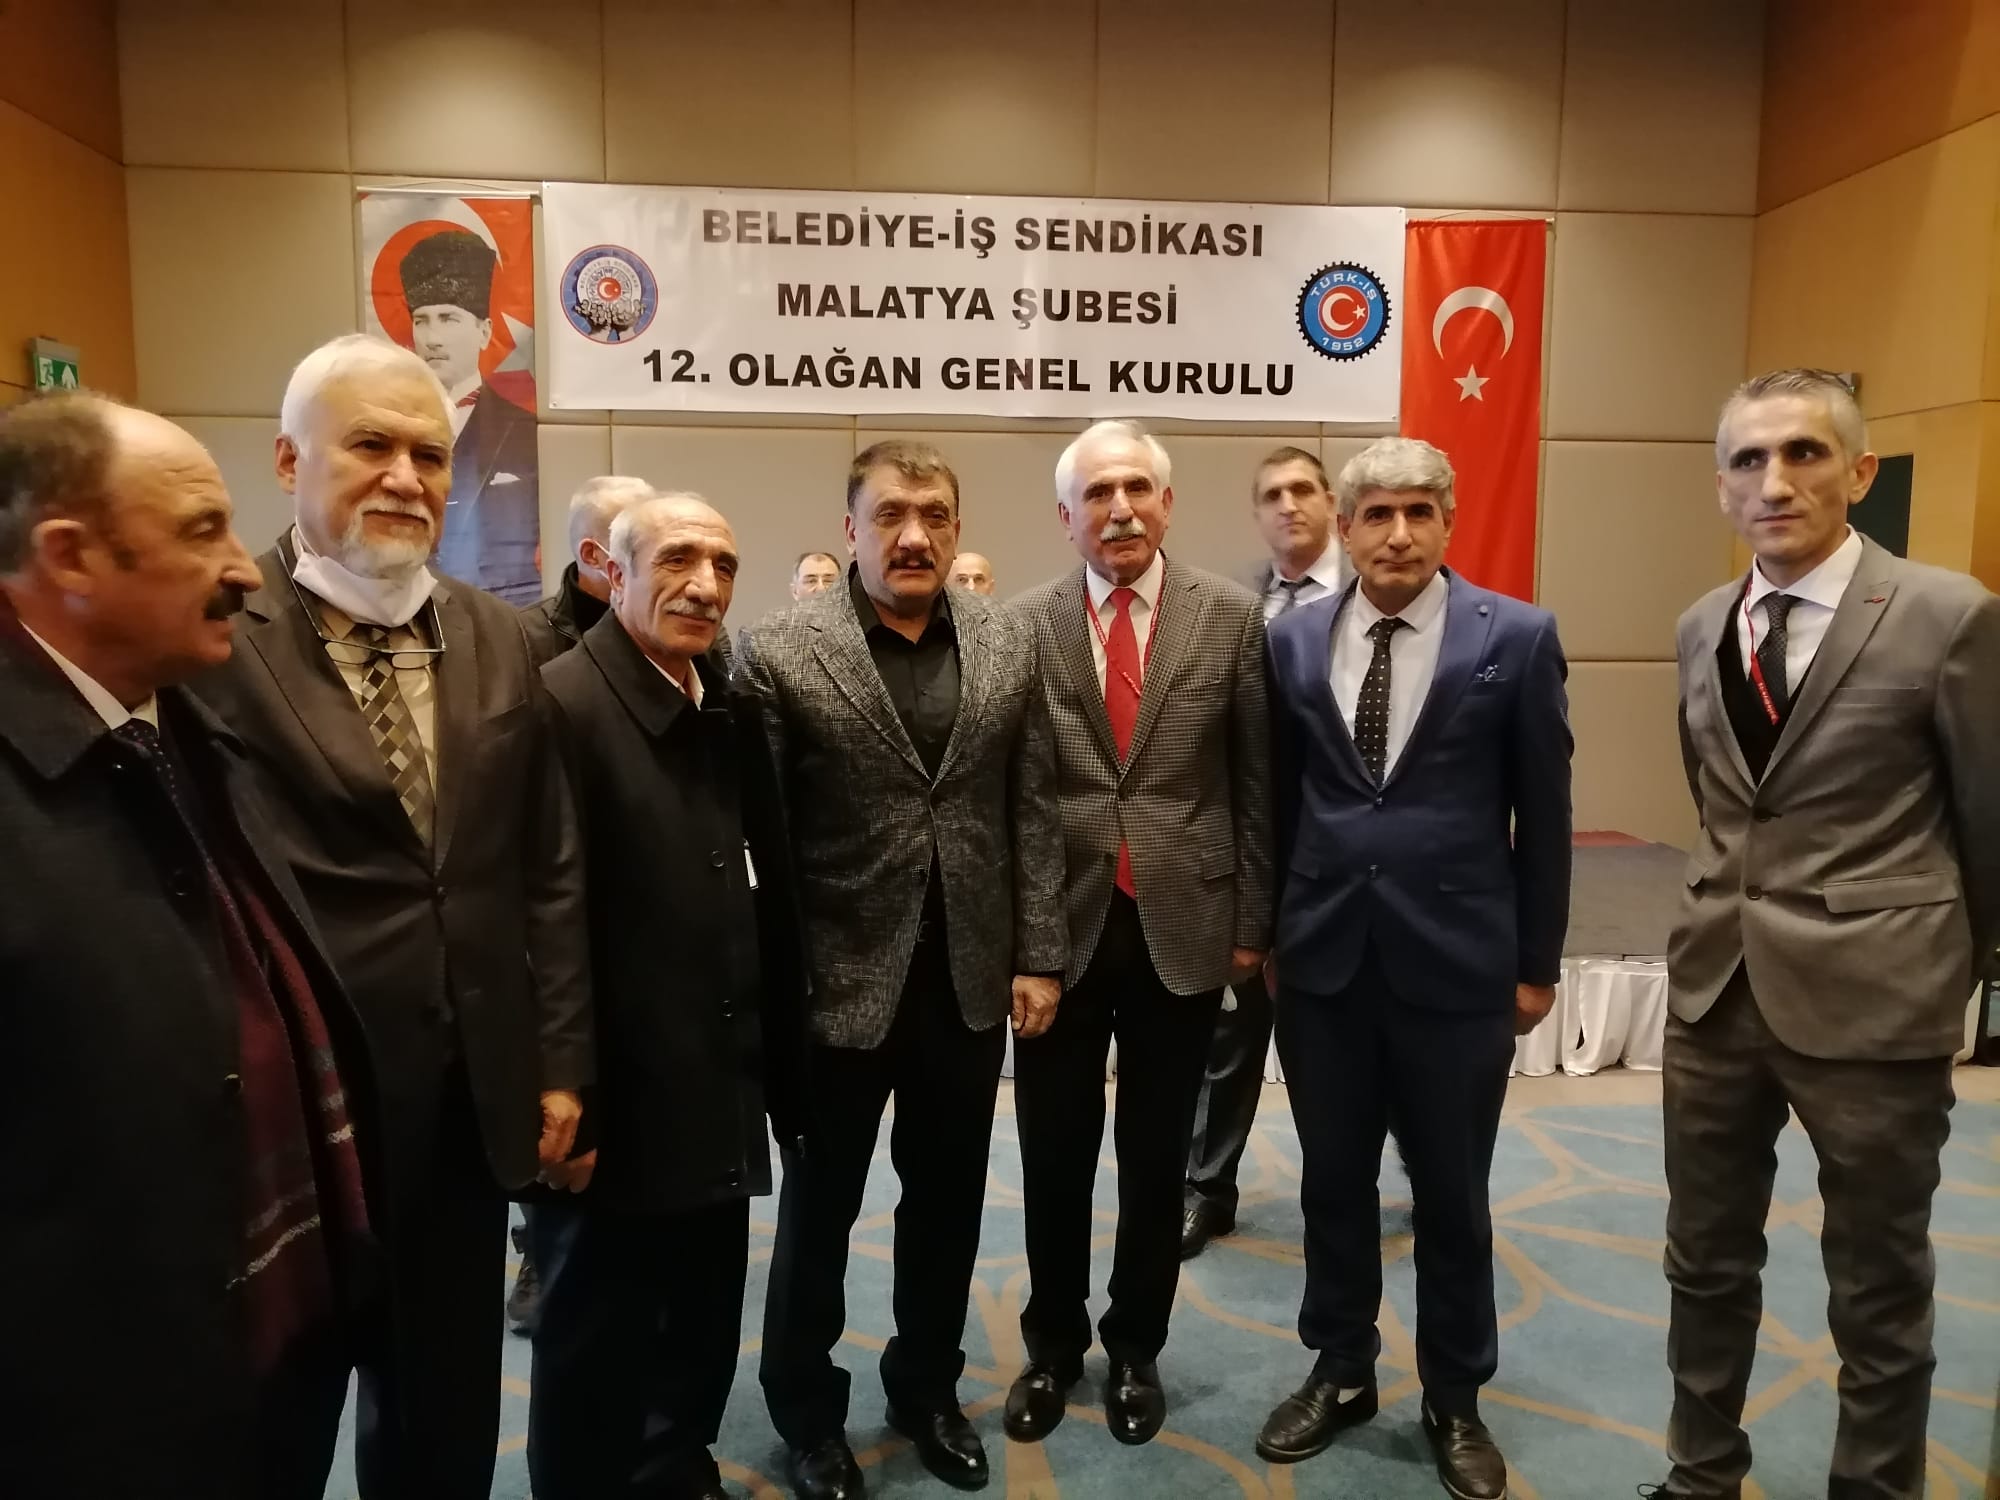 Belediye İş Sendikası Malatya Şubesinin Olağan Genel Kurulunda Osman Nuri Solmazgül güven tazeledi.